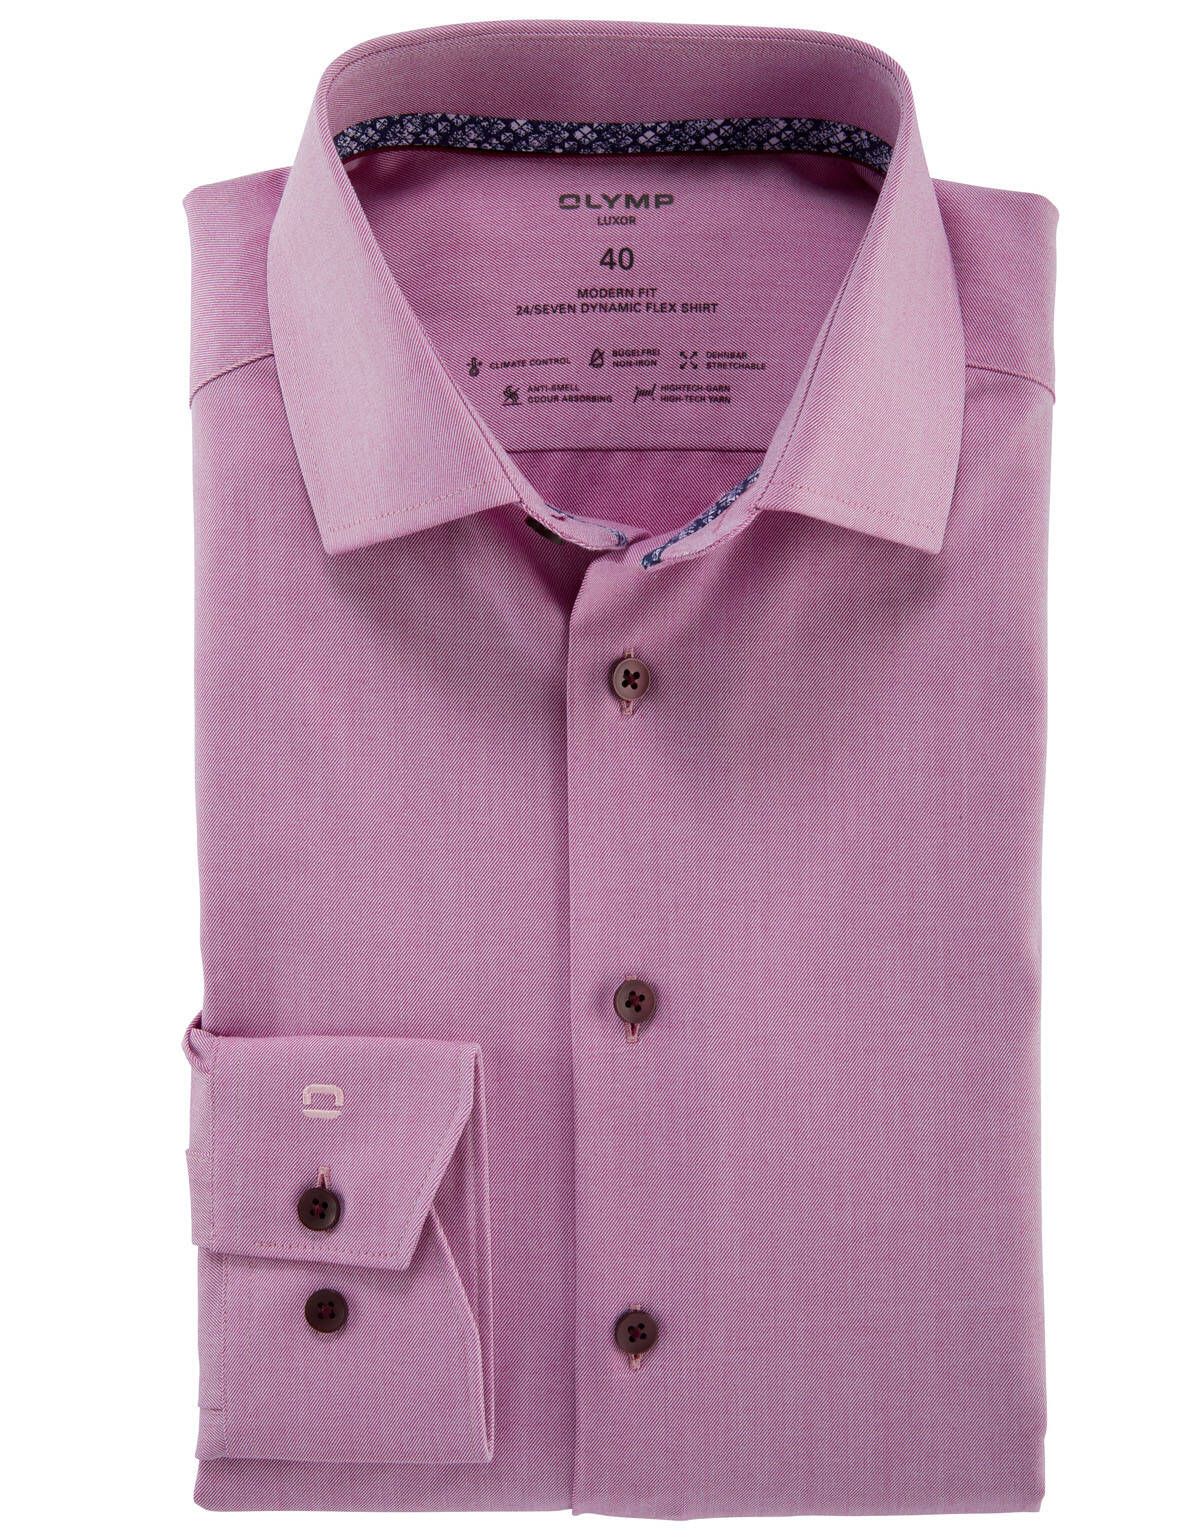 Рубашка мужская OLYMP Luxor 24/7, modern fit[Розовый]